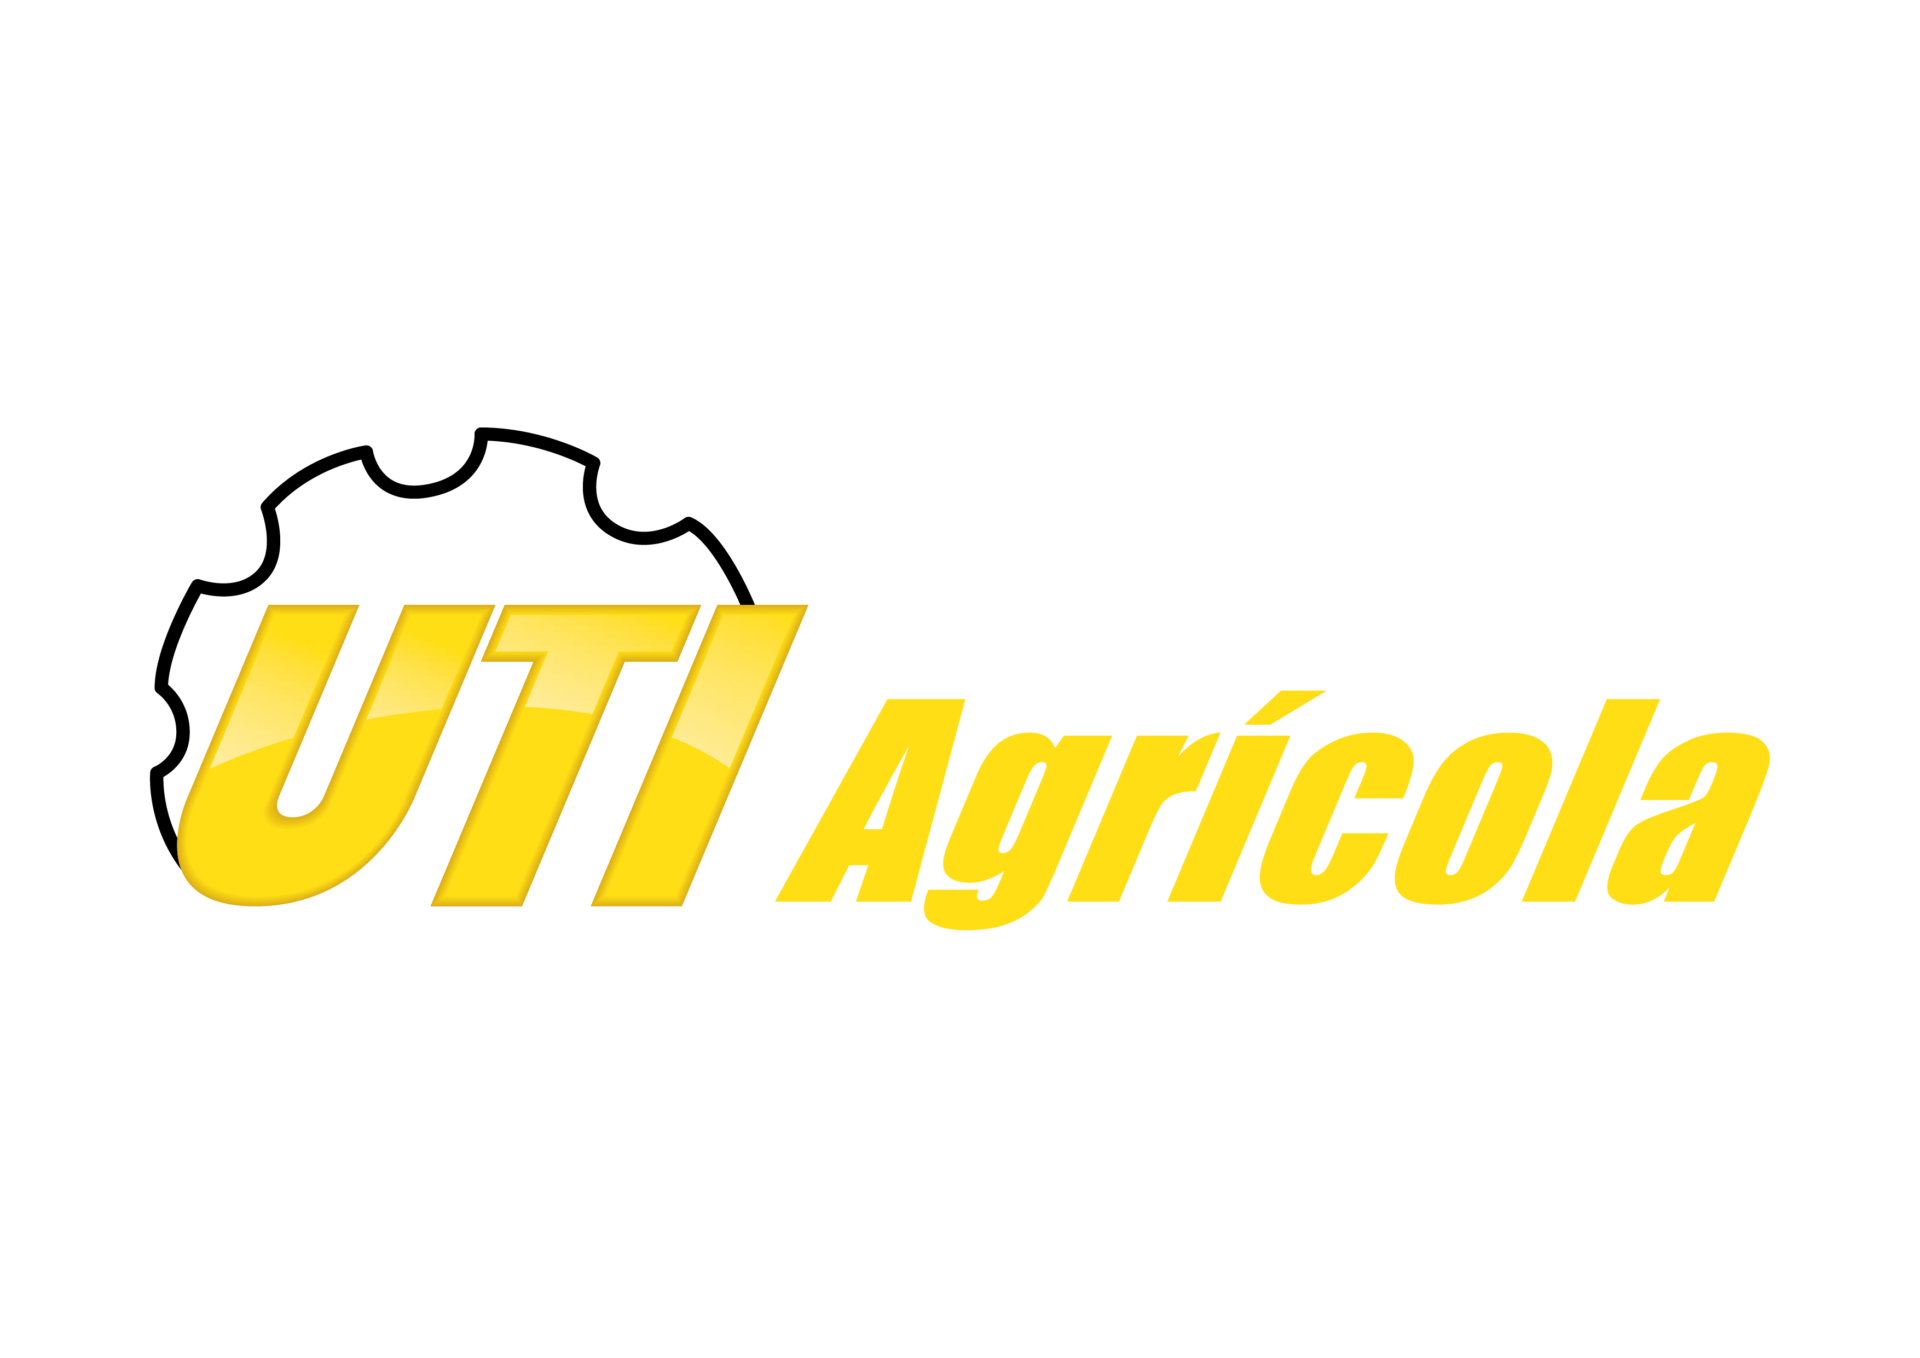 LOGO -UTIAgricola - Um Horizonte de Soluções para o Agronegócio